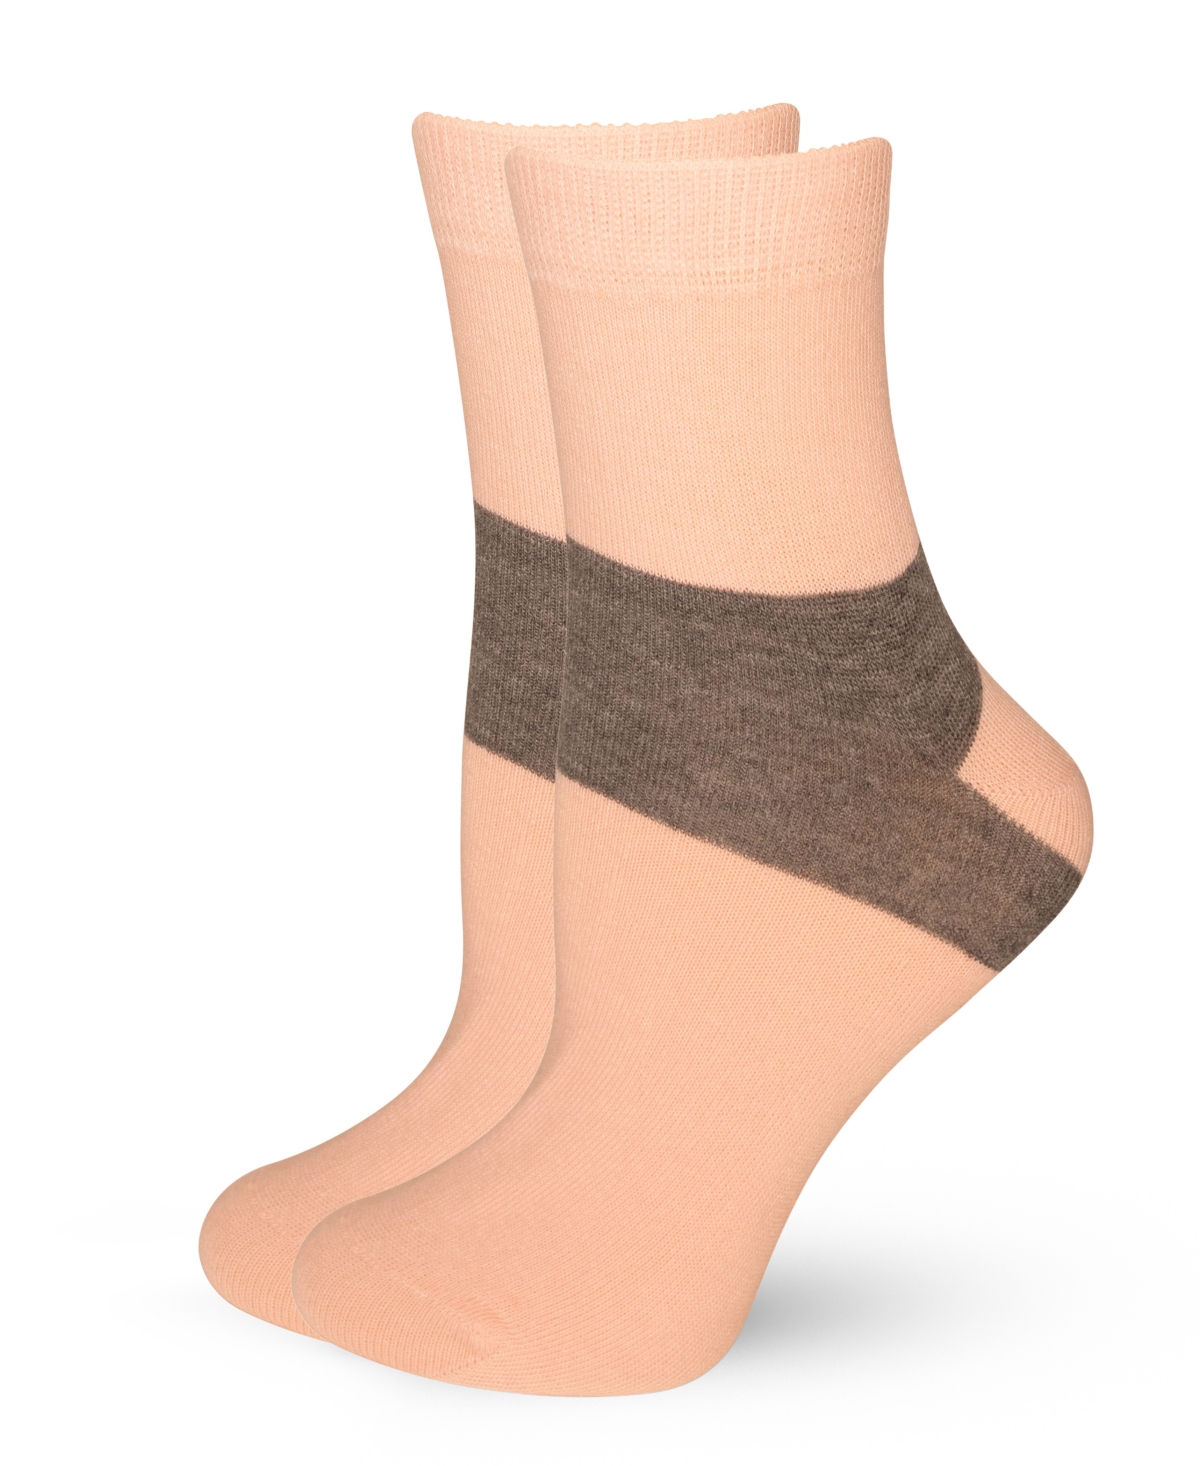 Women's European Made Heel-Stripe Pattern Cotton Socks - Multicolor